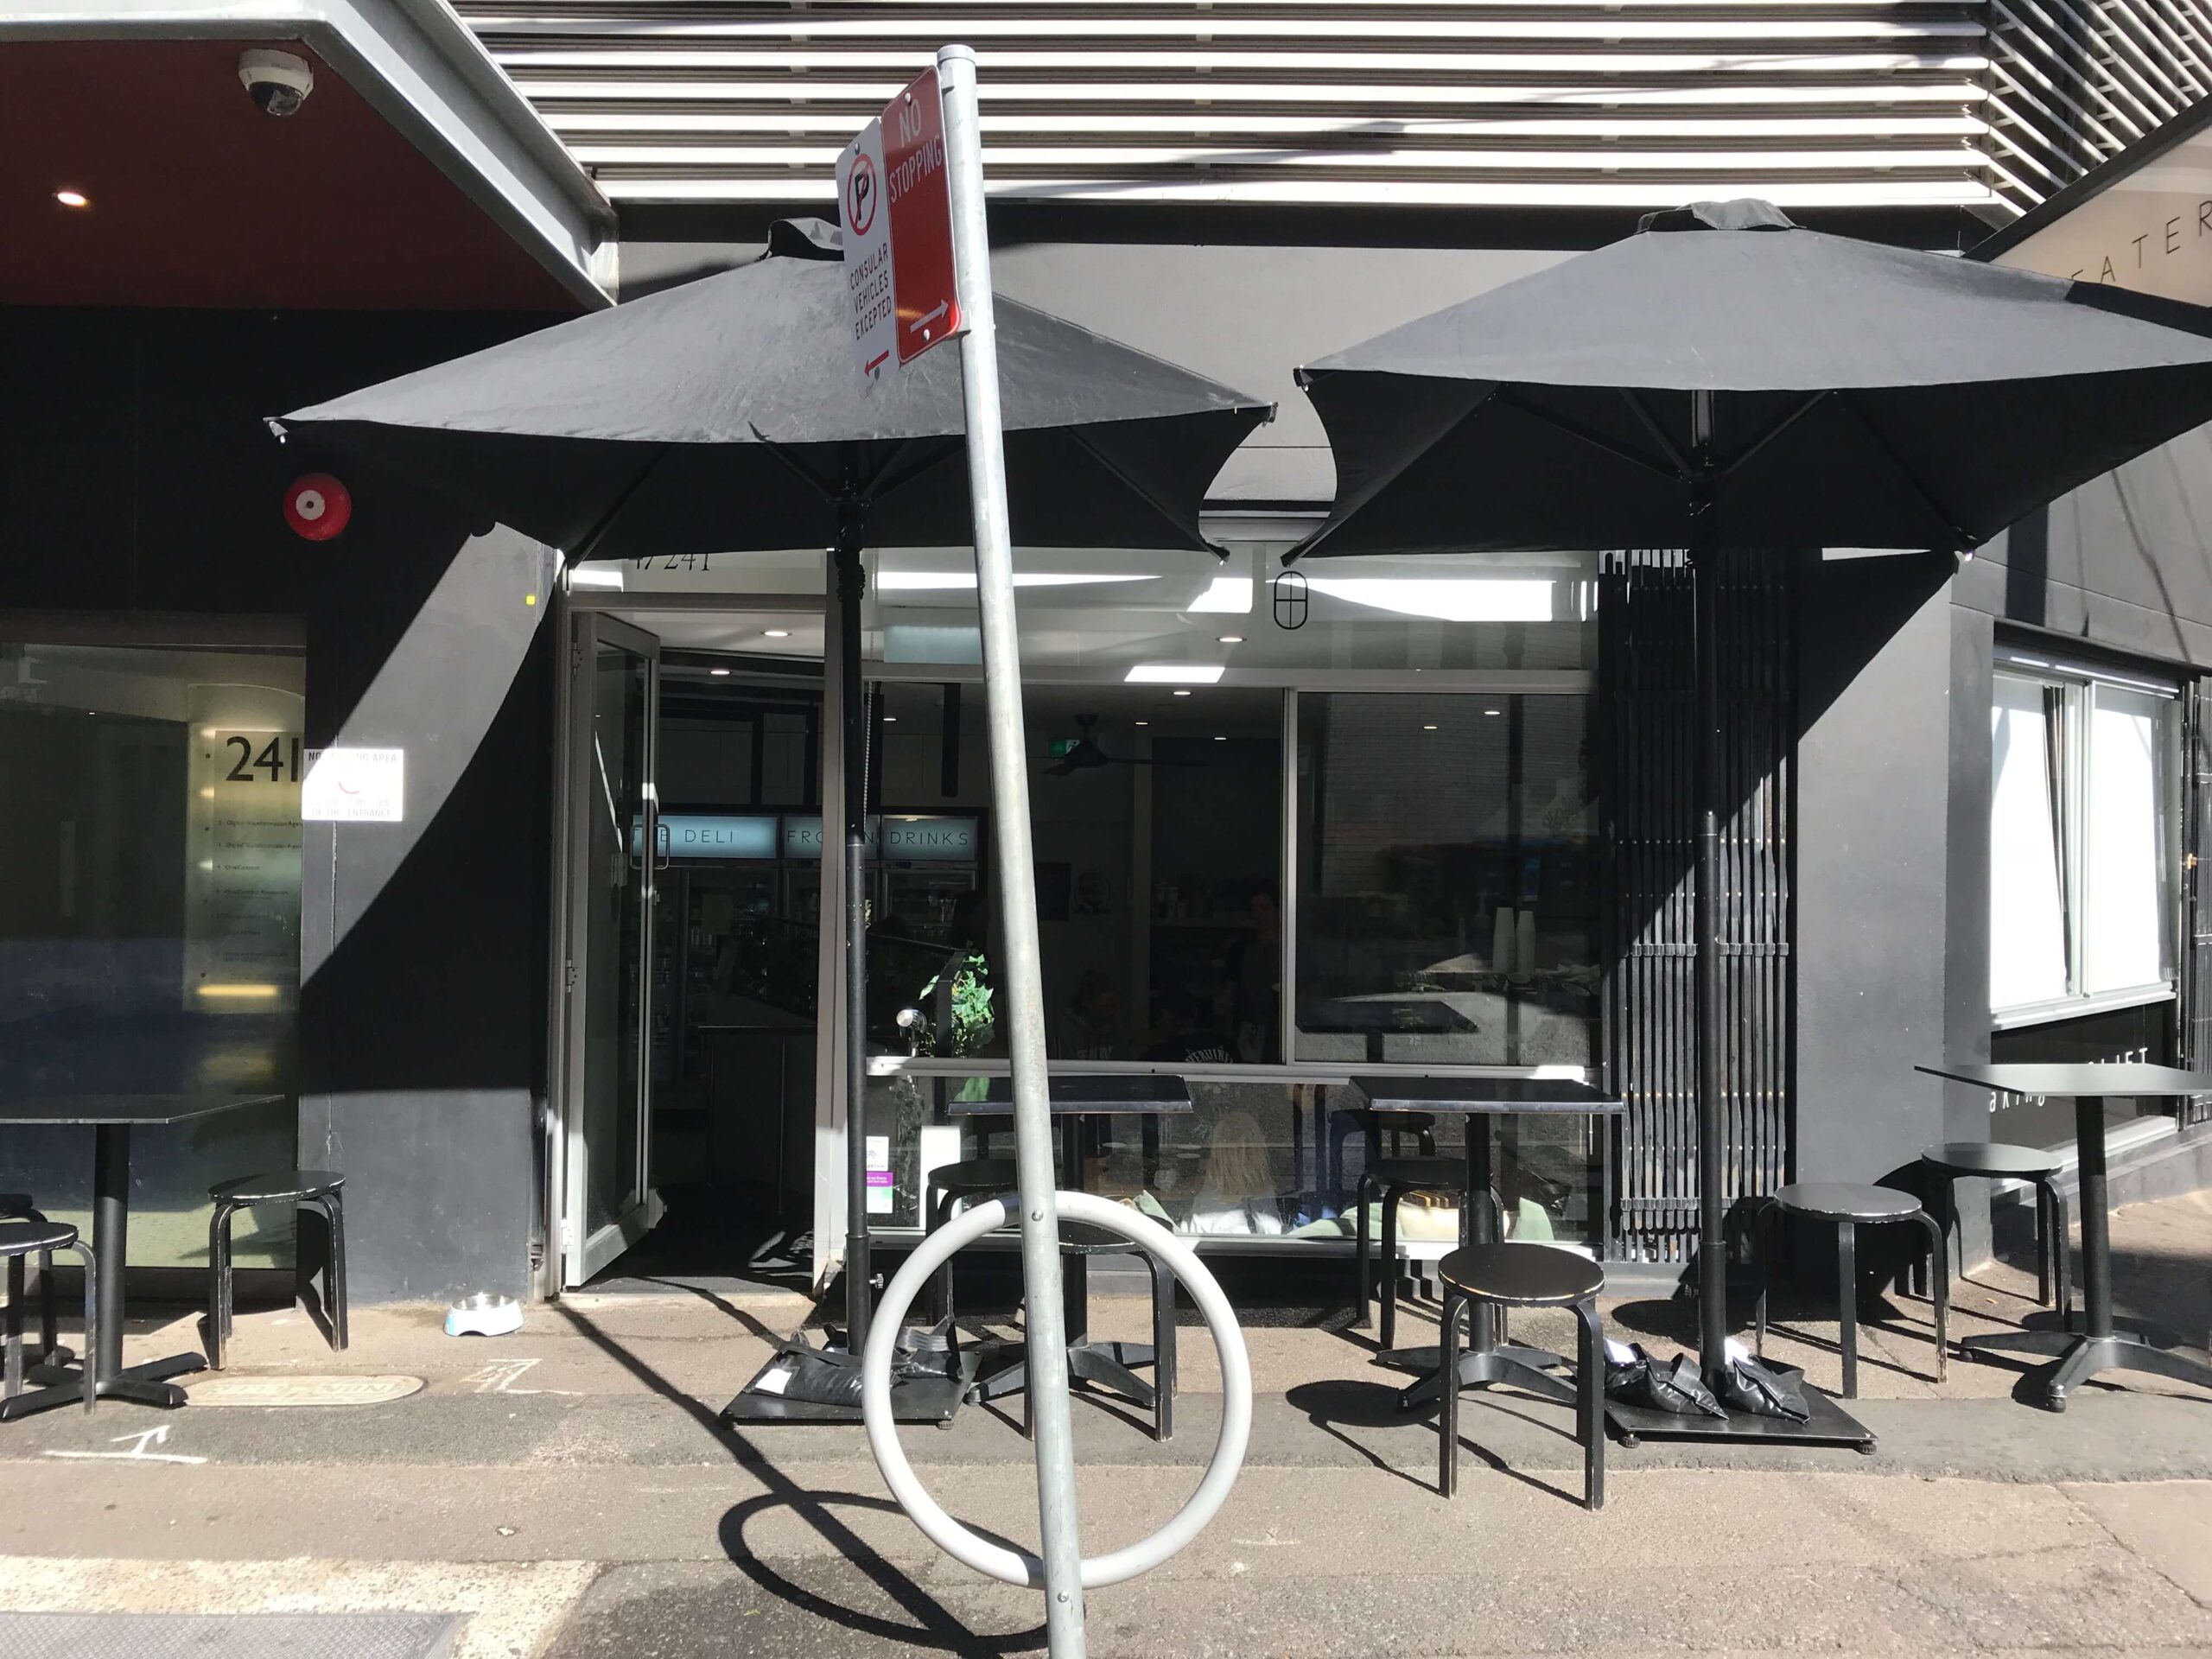 シドニーのカフェ【Shift Eatery】の外観と外のテラス席の様子を撮影した写真